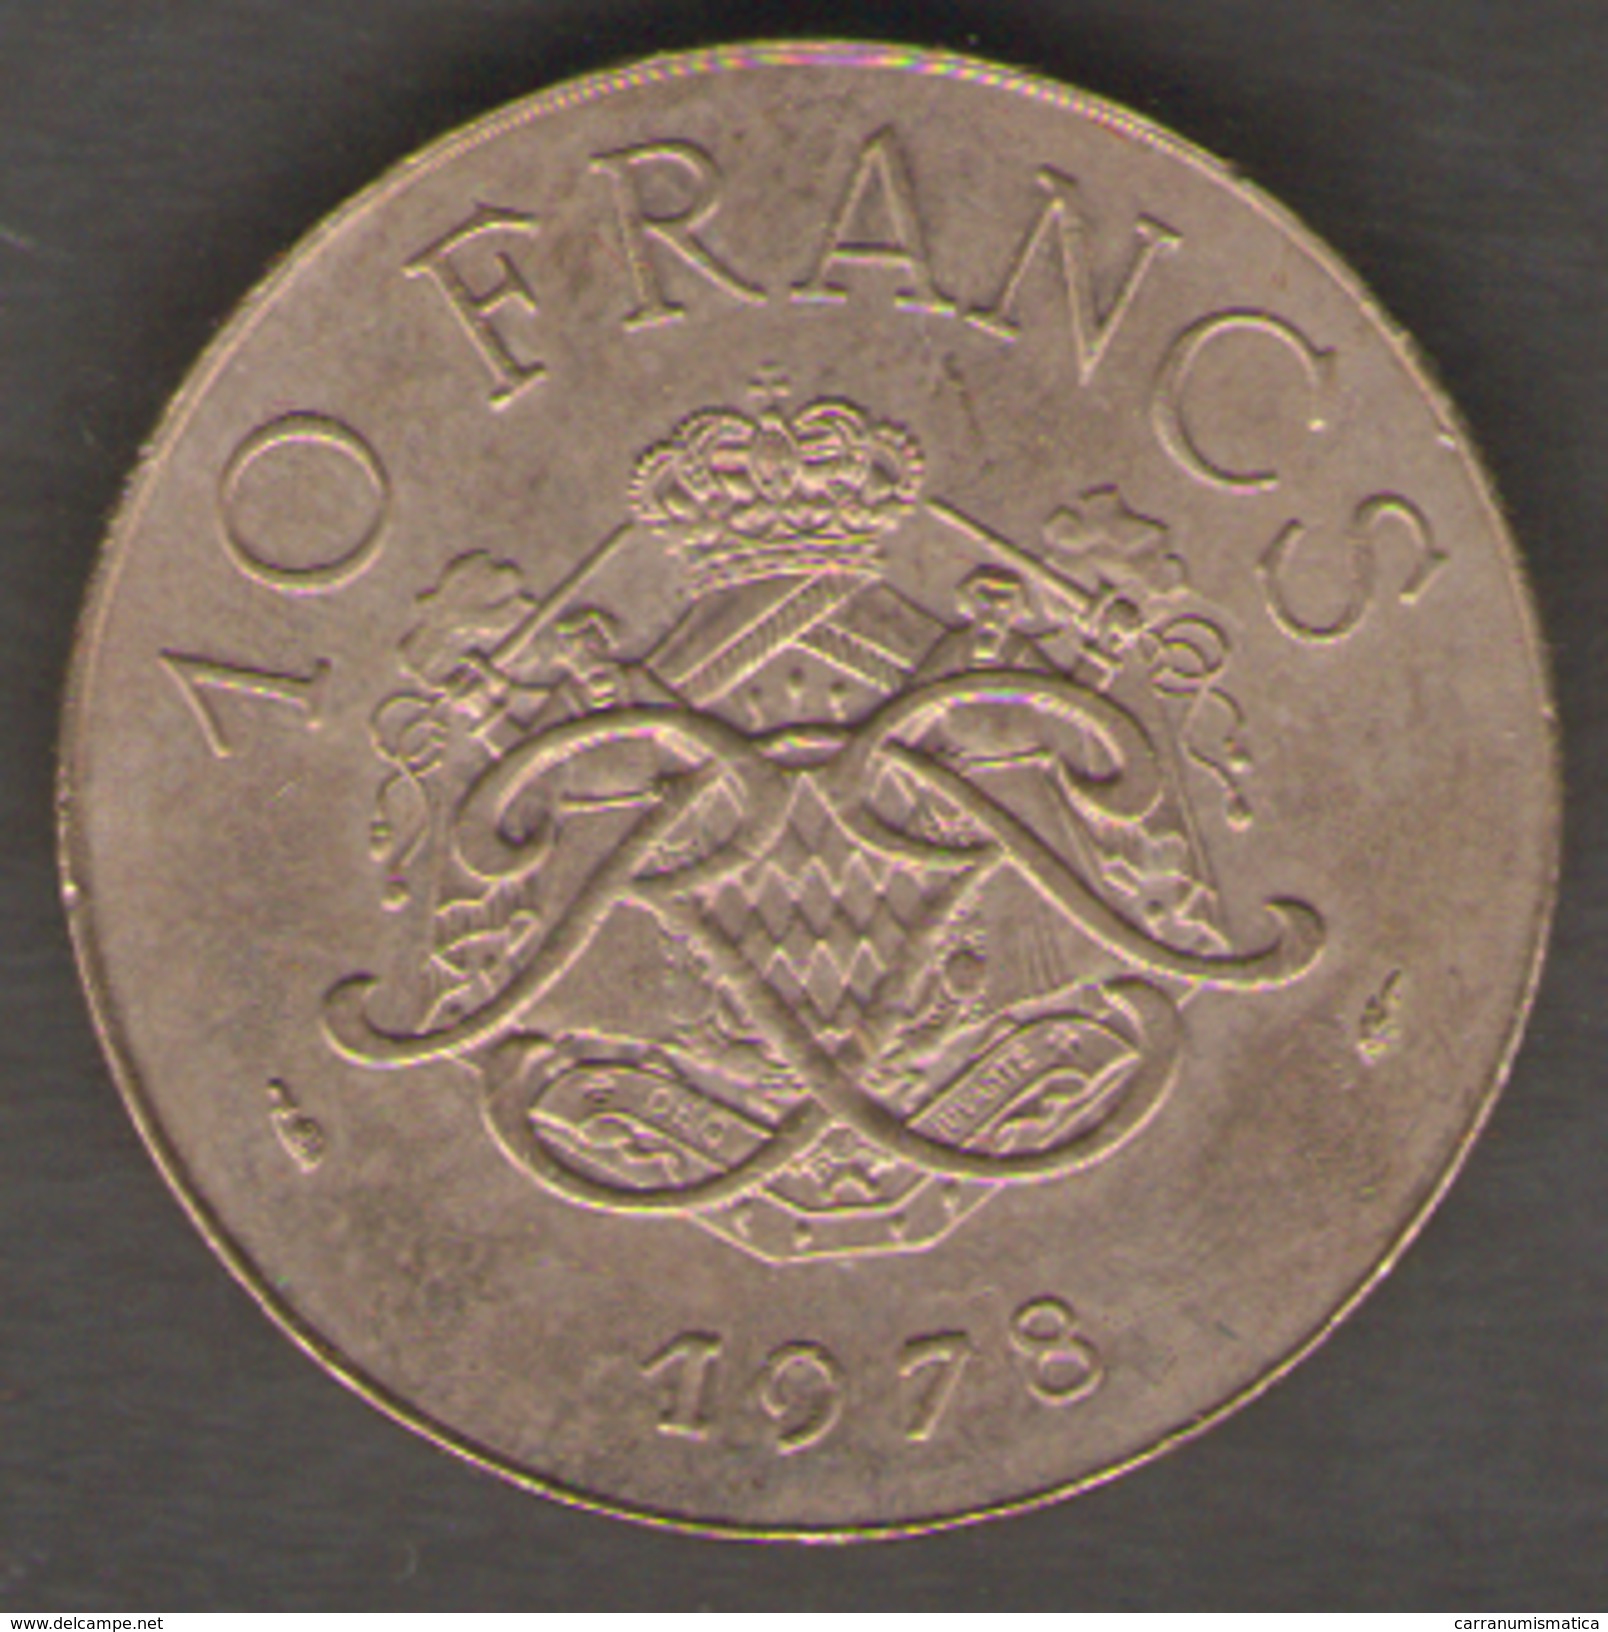 MONACO 10 FRANCS 1978 RAINIERI III - 1960-2001 Franchi Nuovi